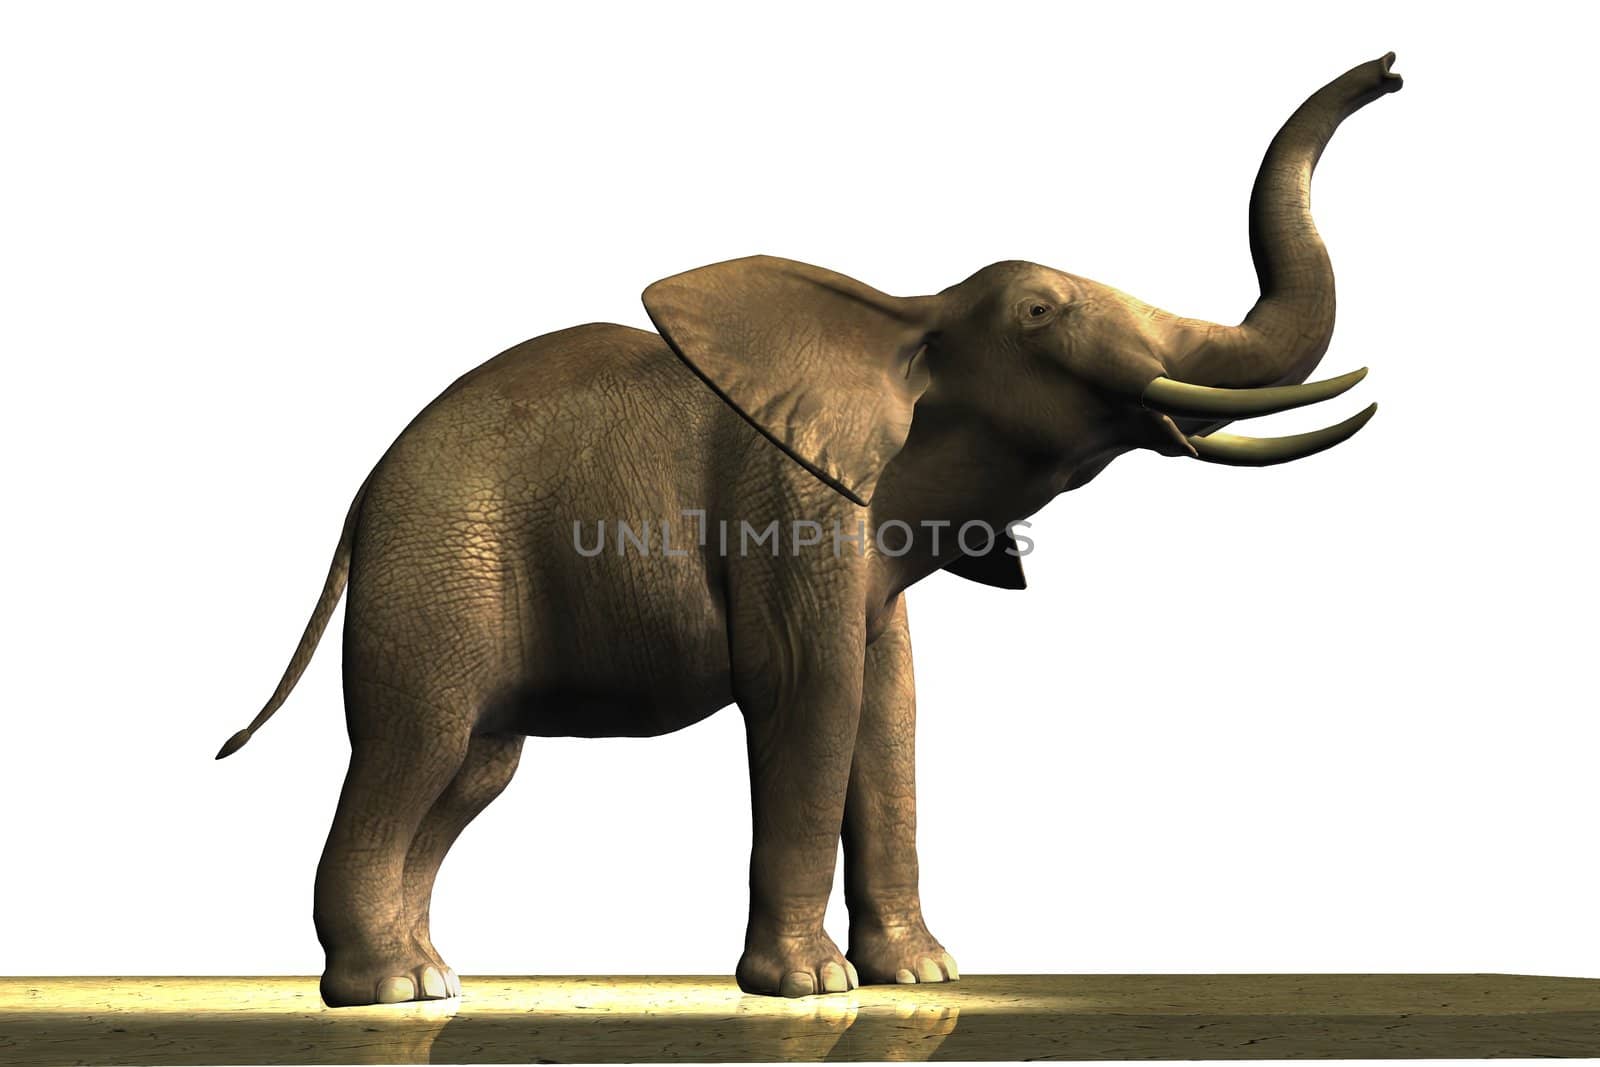 ELEPHANT by Catmando